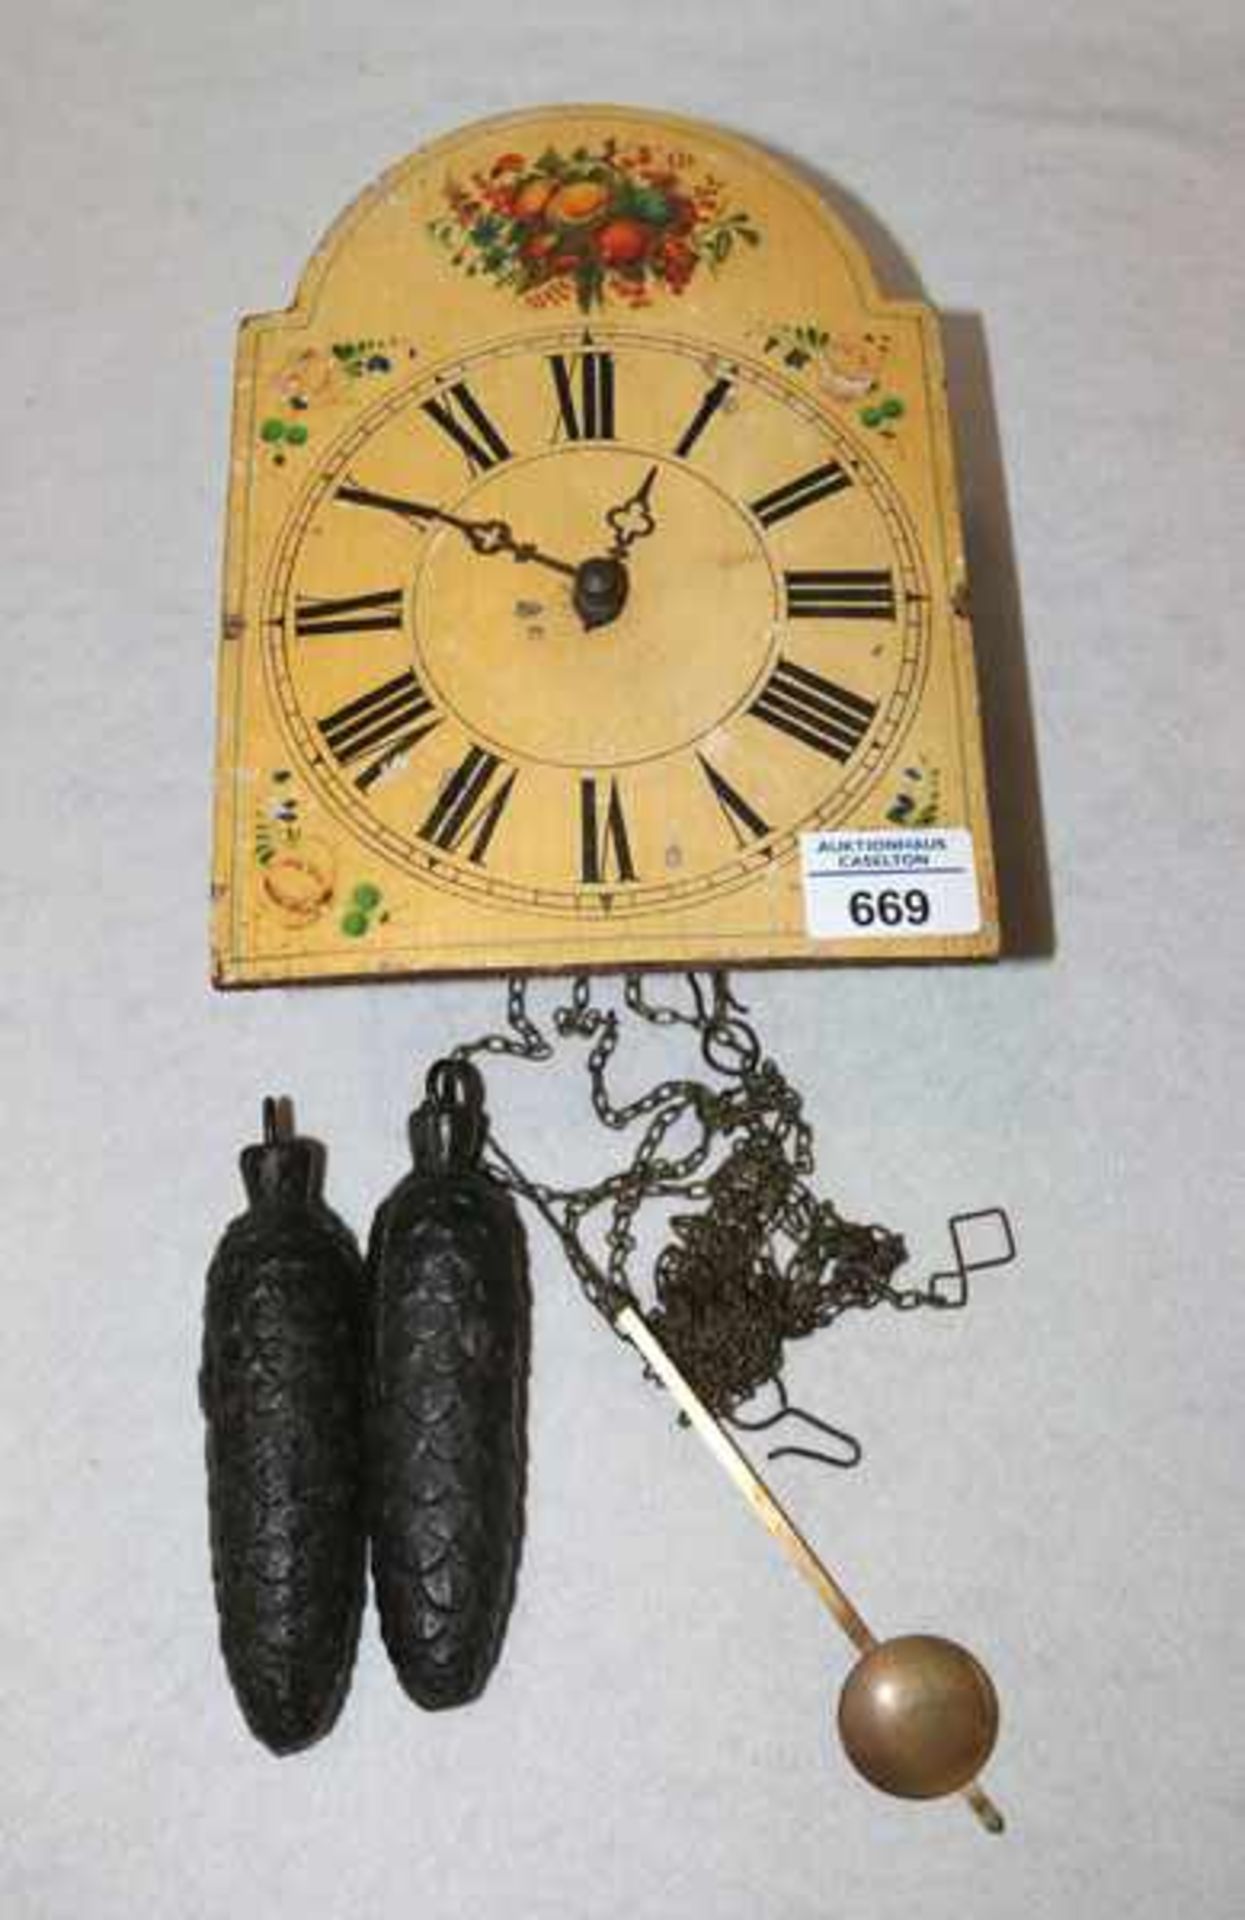 Schildblattuhr mit Blumendekor, Pendel und 2 Gewichten, Altersspuren, 23 cm x 17 cm